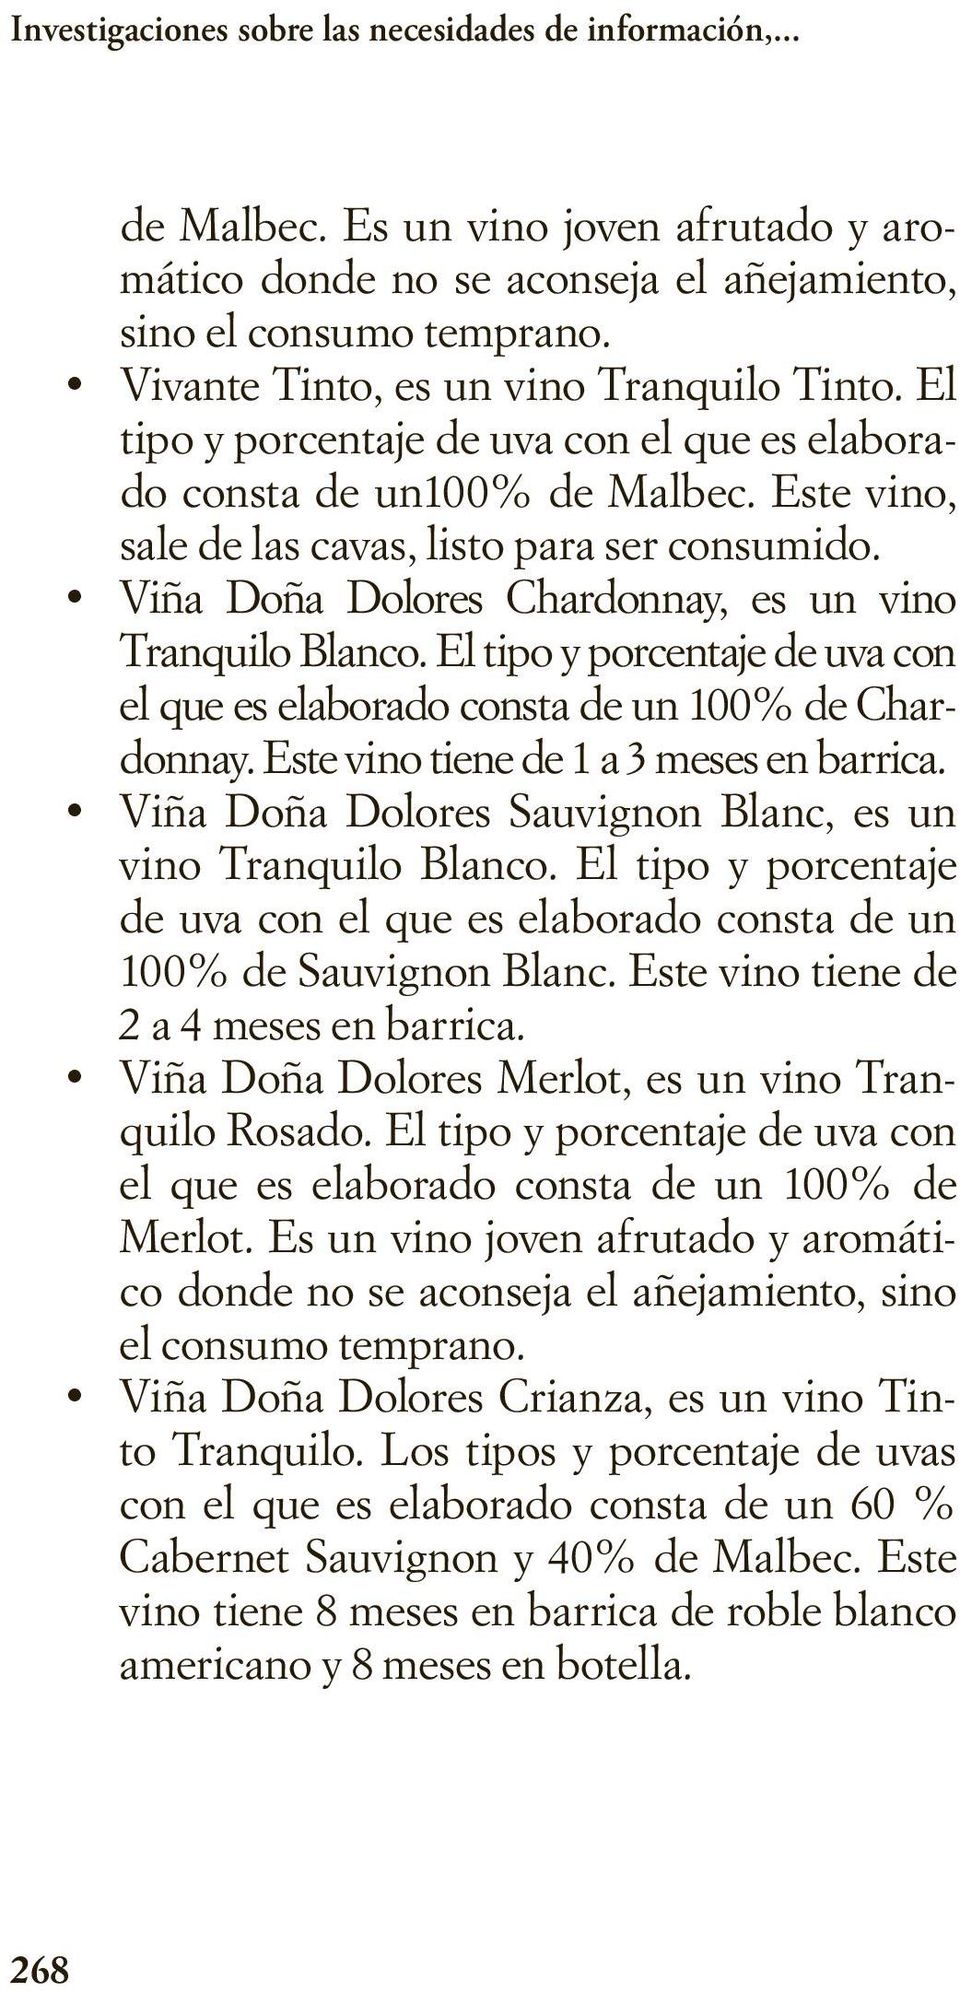 Viña Doña Dolores Chardonnay, es un vino Tranquilo Blanco. El tipo y porcentaje de uva con el que es elaborado consta de un 100% de Chardonnay. Este vino tiene de 1 a 3 meses en barrica.